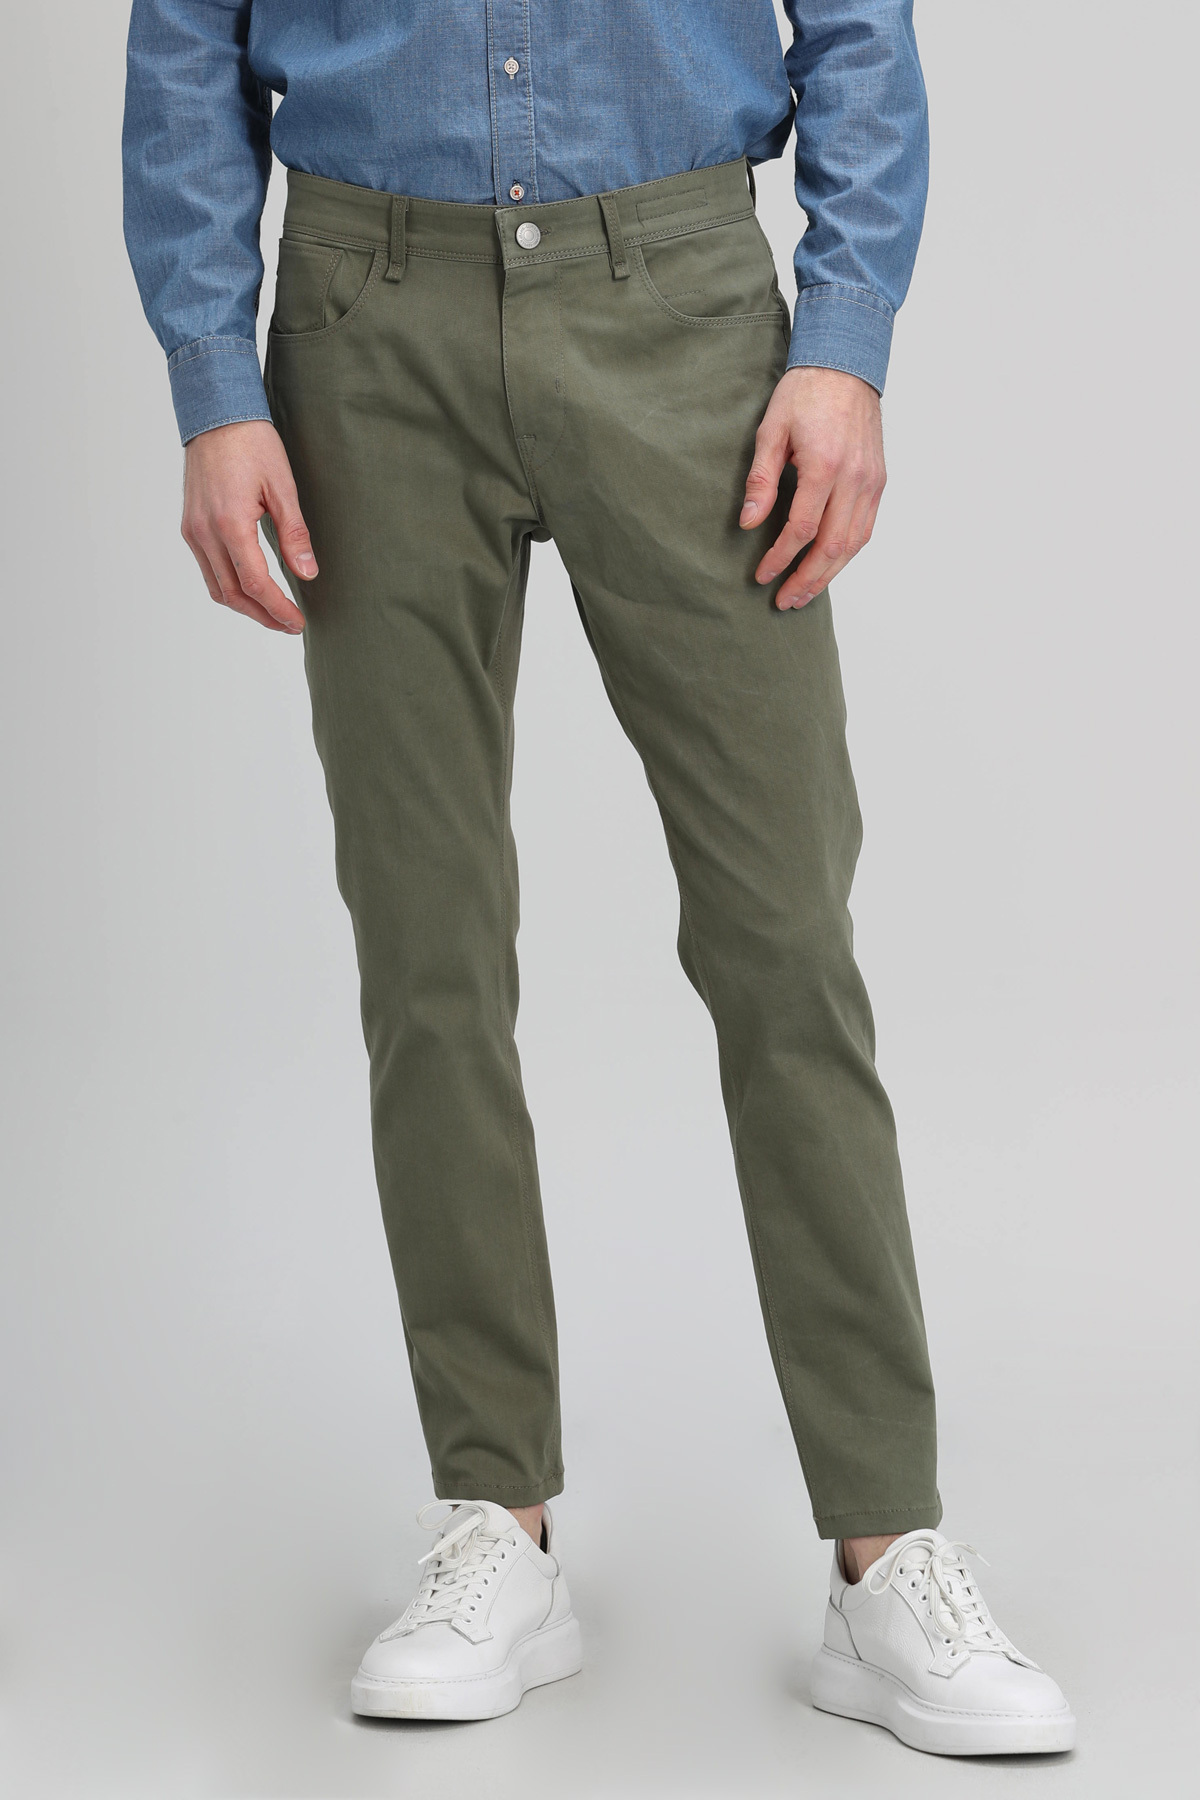 Marp Spor 5 Cep Erkek Pantolon Slim Fit Yeşil